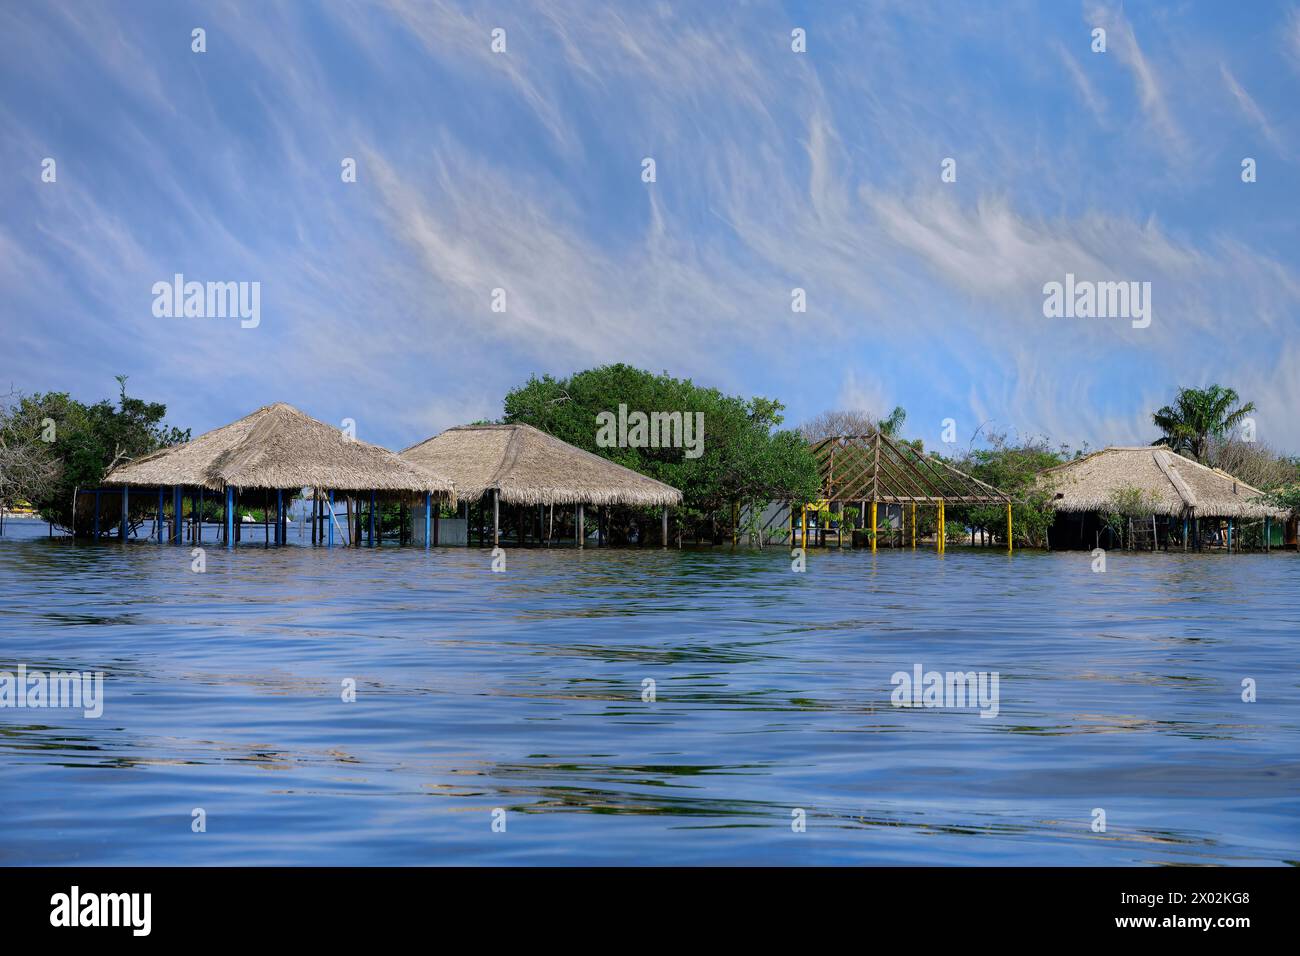 Cabanes de plage inondées, Alter do Chao Beach, rivière Tapajos, para State, Brésil, Amérique du Sud Banque D'Images